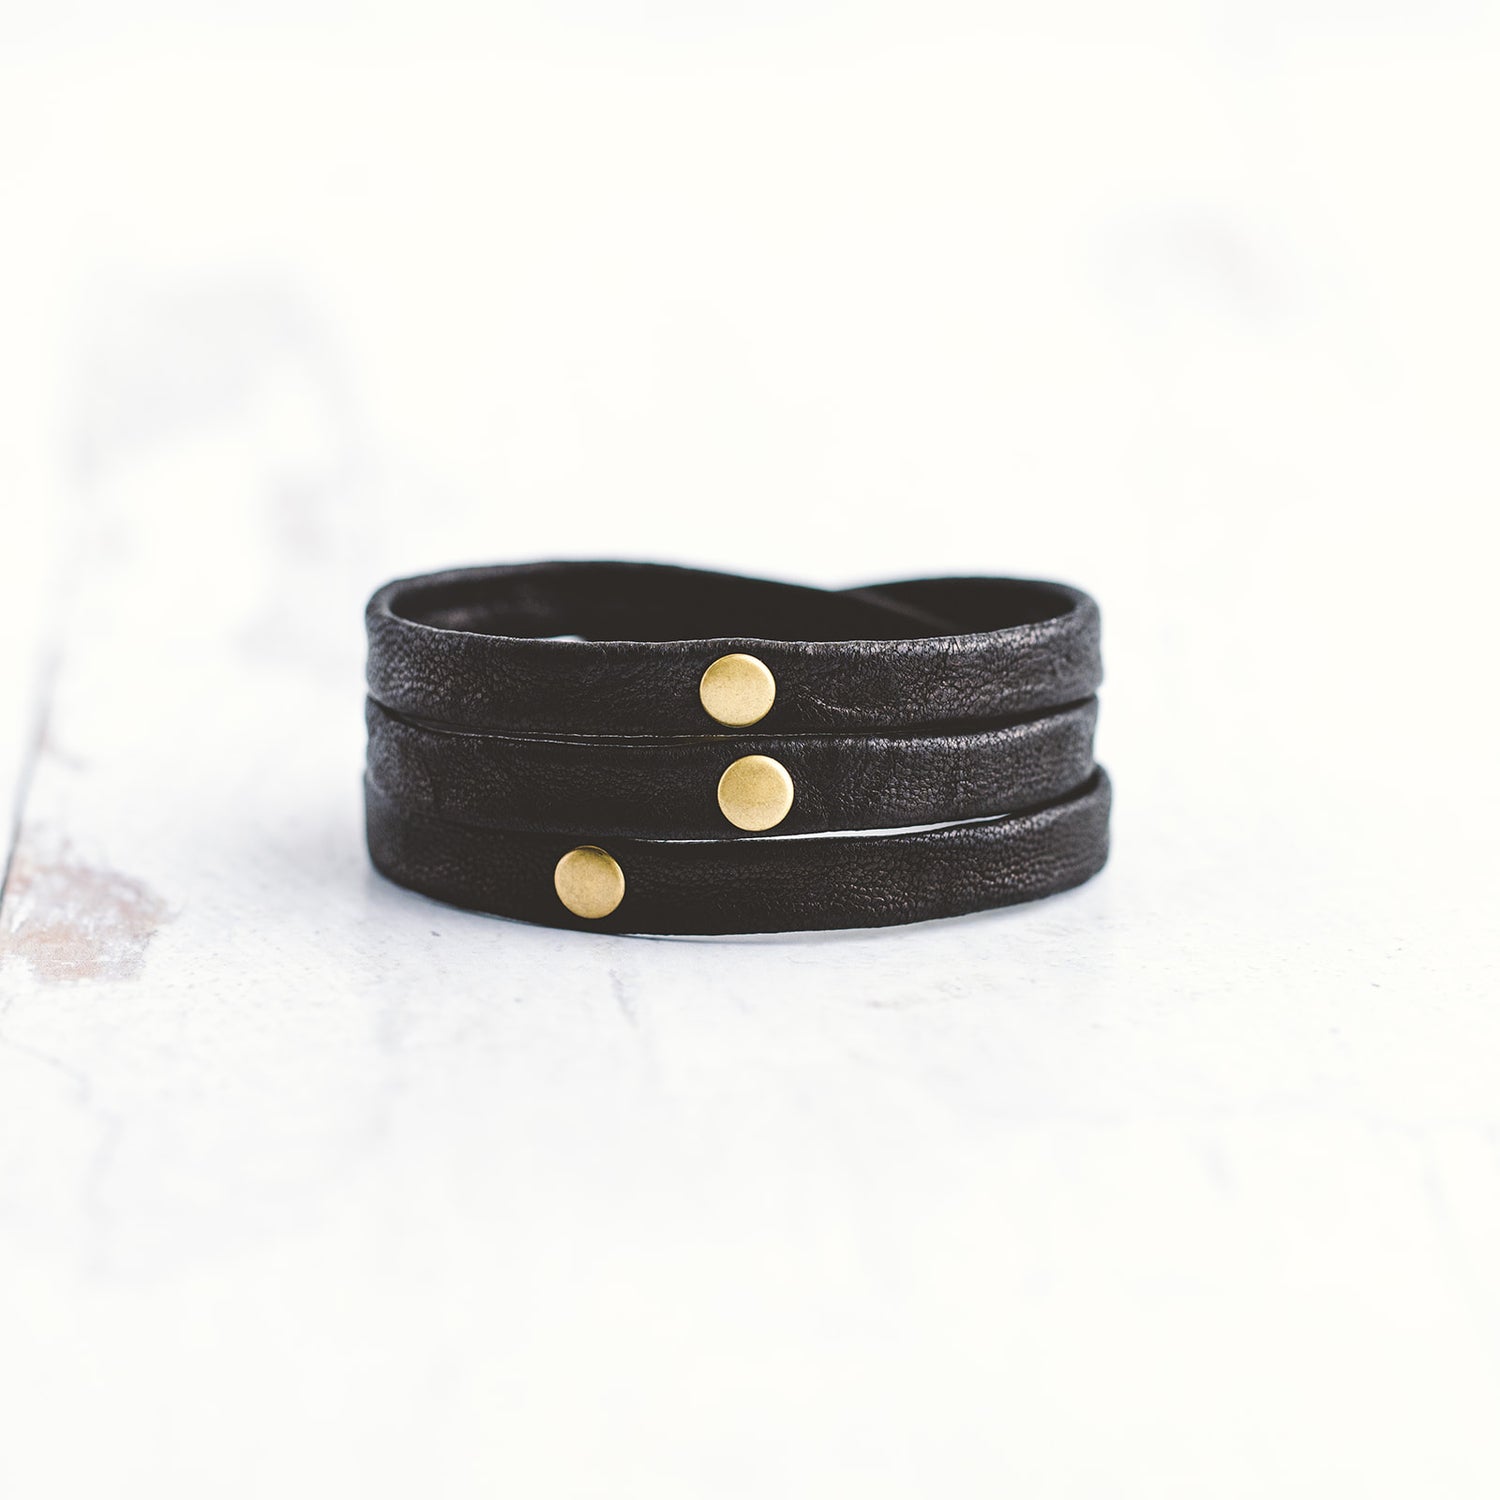 Black Leather Bracelet with Antiqued Metal- Men's Bracelet